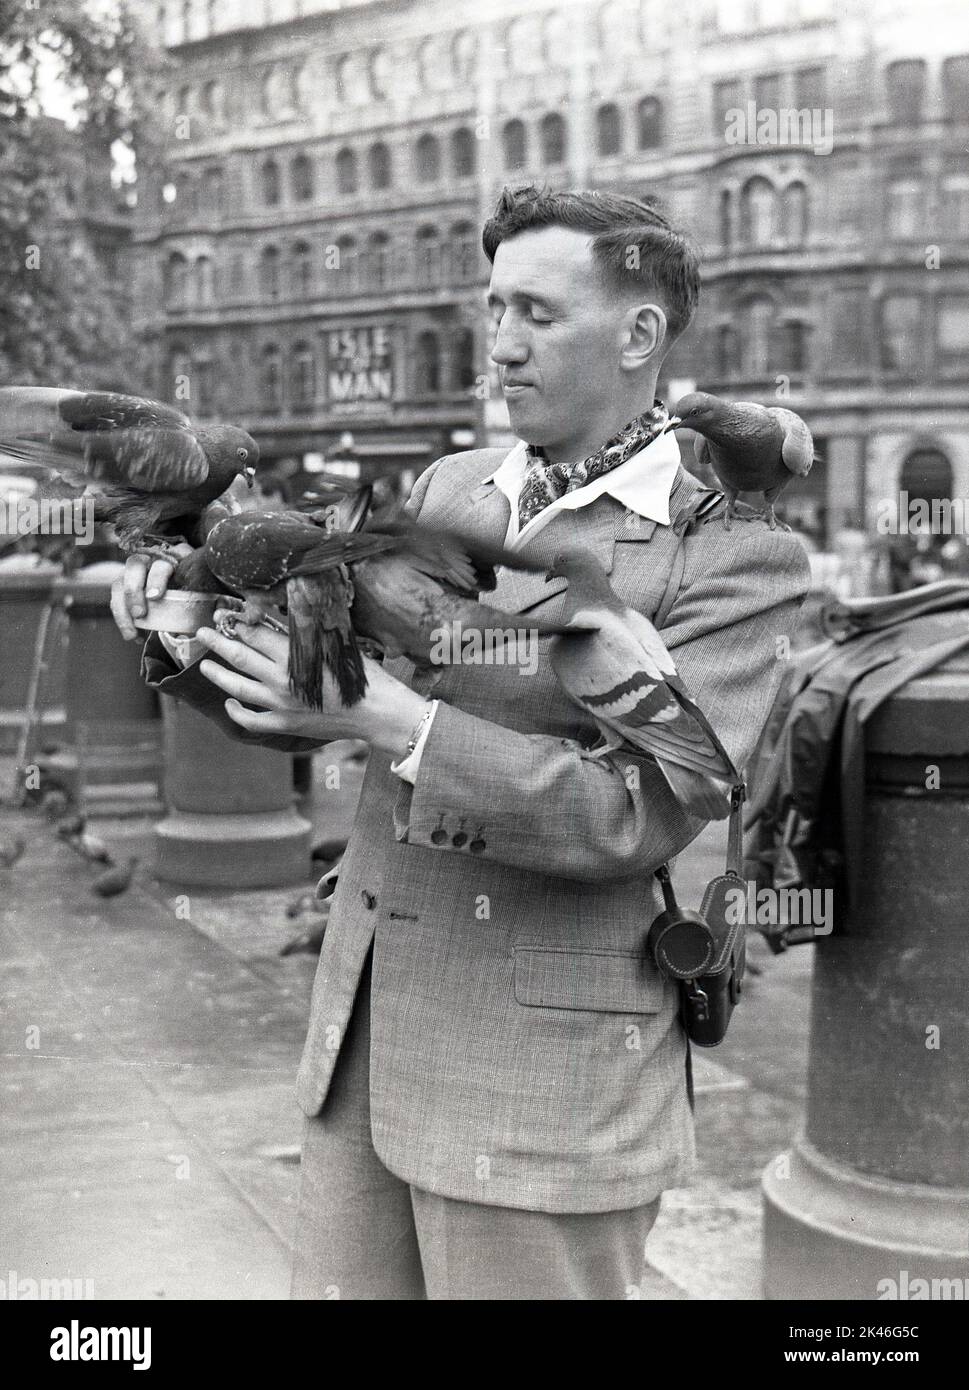 1958, historisch, sitzen Tauben auf einem Gentleman am Trafalgar Square, Westminster, London, England, Großbritannien, während er seine Dose Erbsen aushält, um sie zu füttern. In dieser Zeit und später wurde die Fütterung der Wildvögel auf dem Platz erlaubt und Händler verkauften Dosen von Lebensmitteln, Aber um die Wende des Jahrzehnts, als Millionen Pfund Renovierung in der Gegend stattgefunden haben, wurden Abschiedsgesetze eingeführt, um die Fütterung zu verbieten, um die Zahl der Menschen zu reduzieren und die Umwelt zu verbessern. Stockfoto